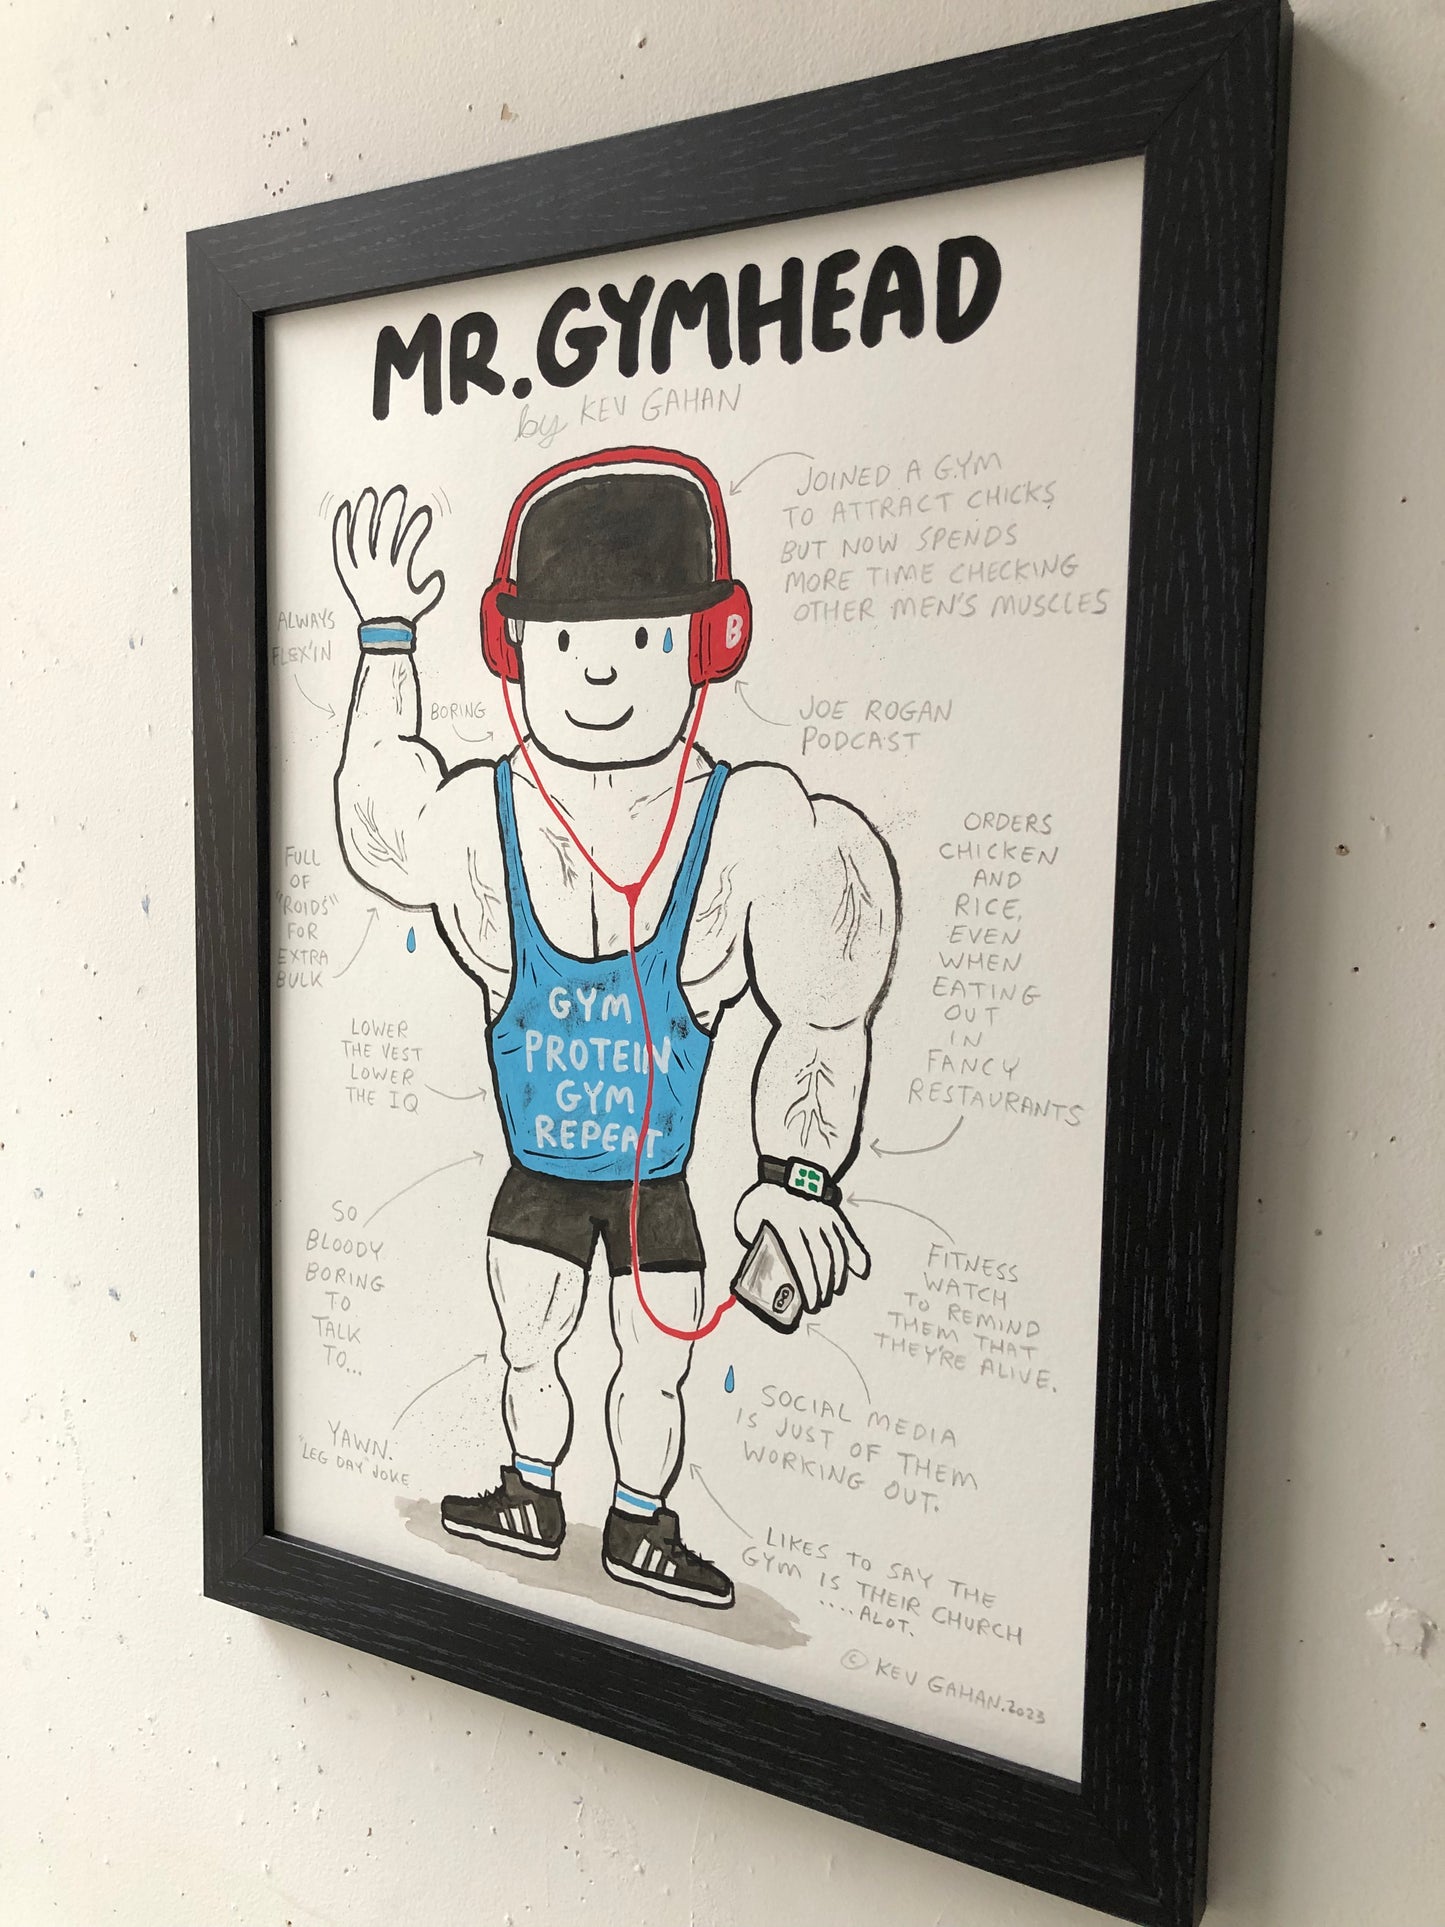 Mr.Gymhead - Original Artwork